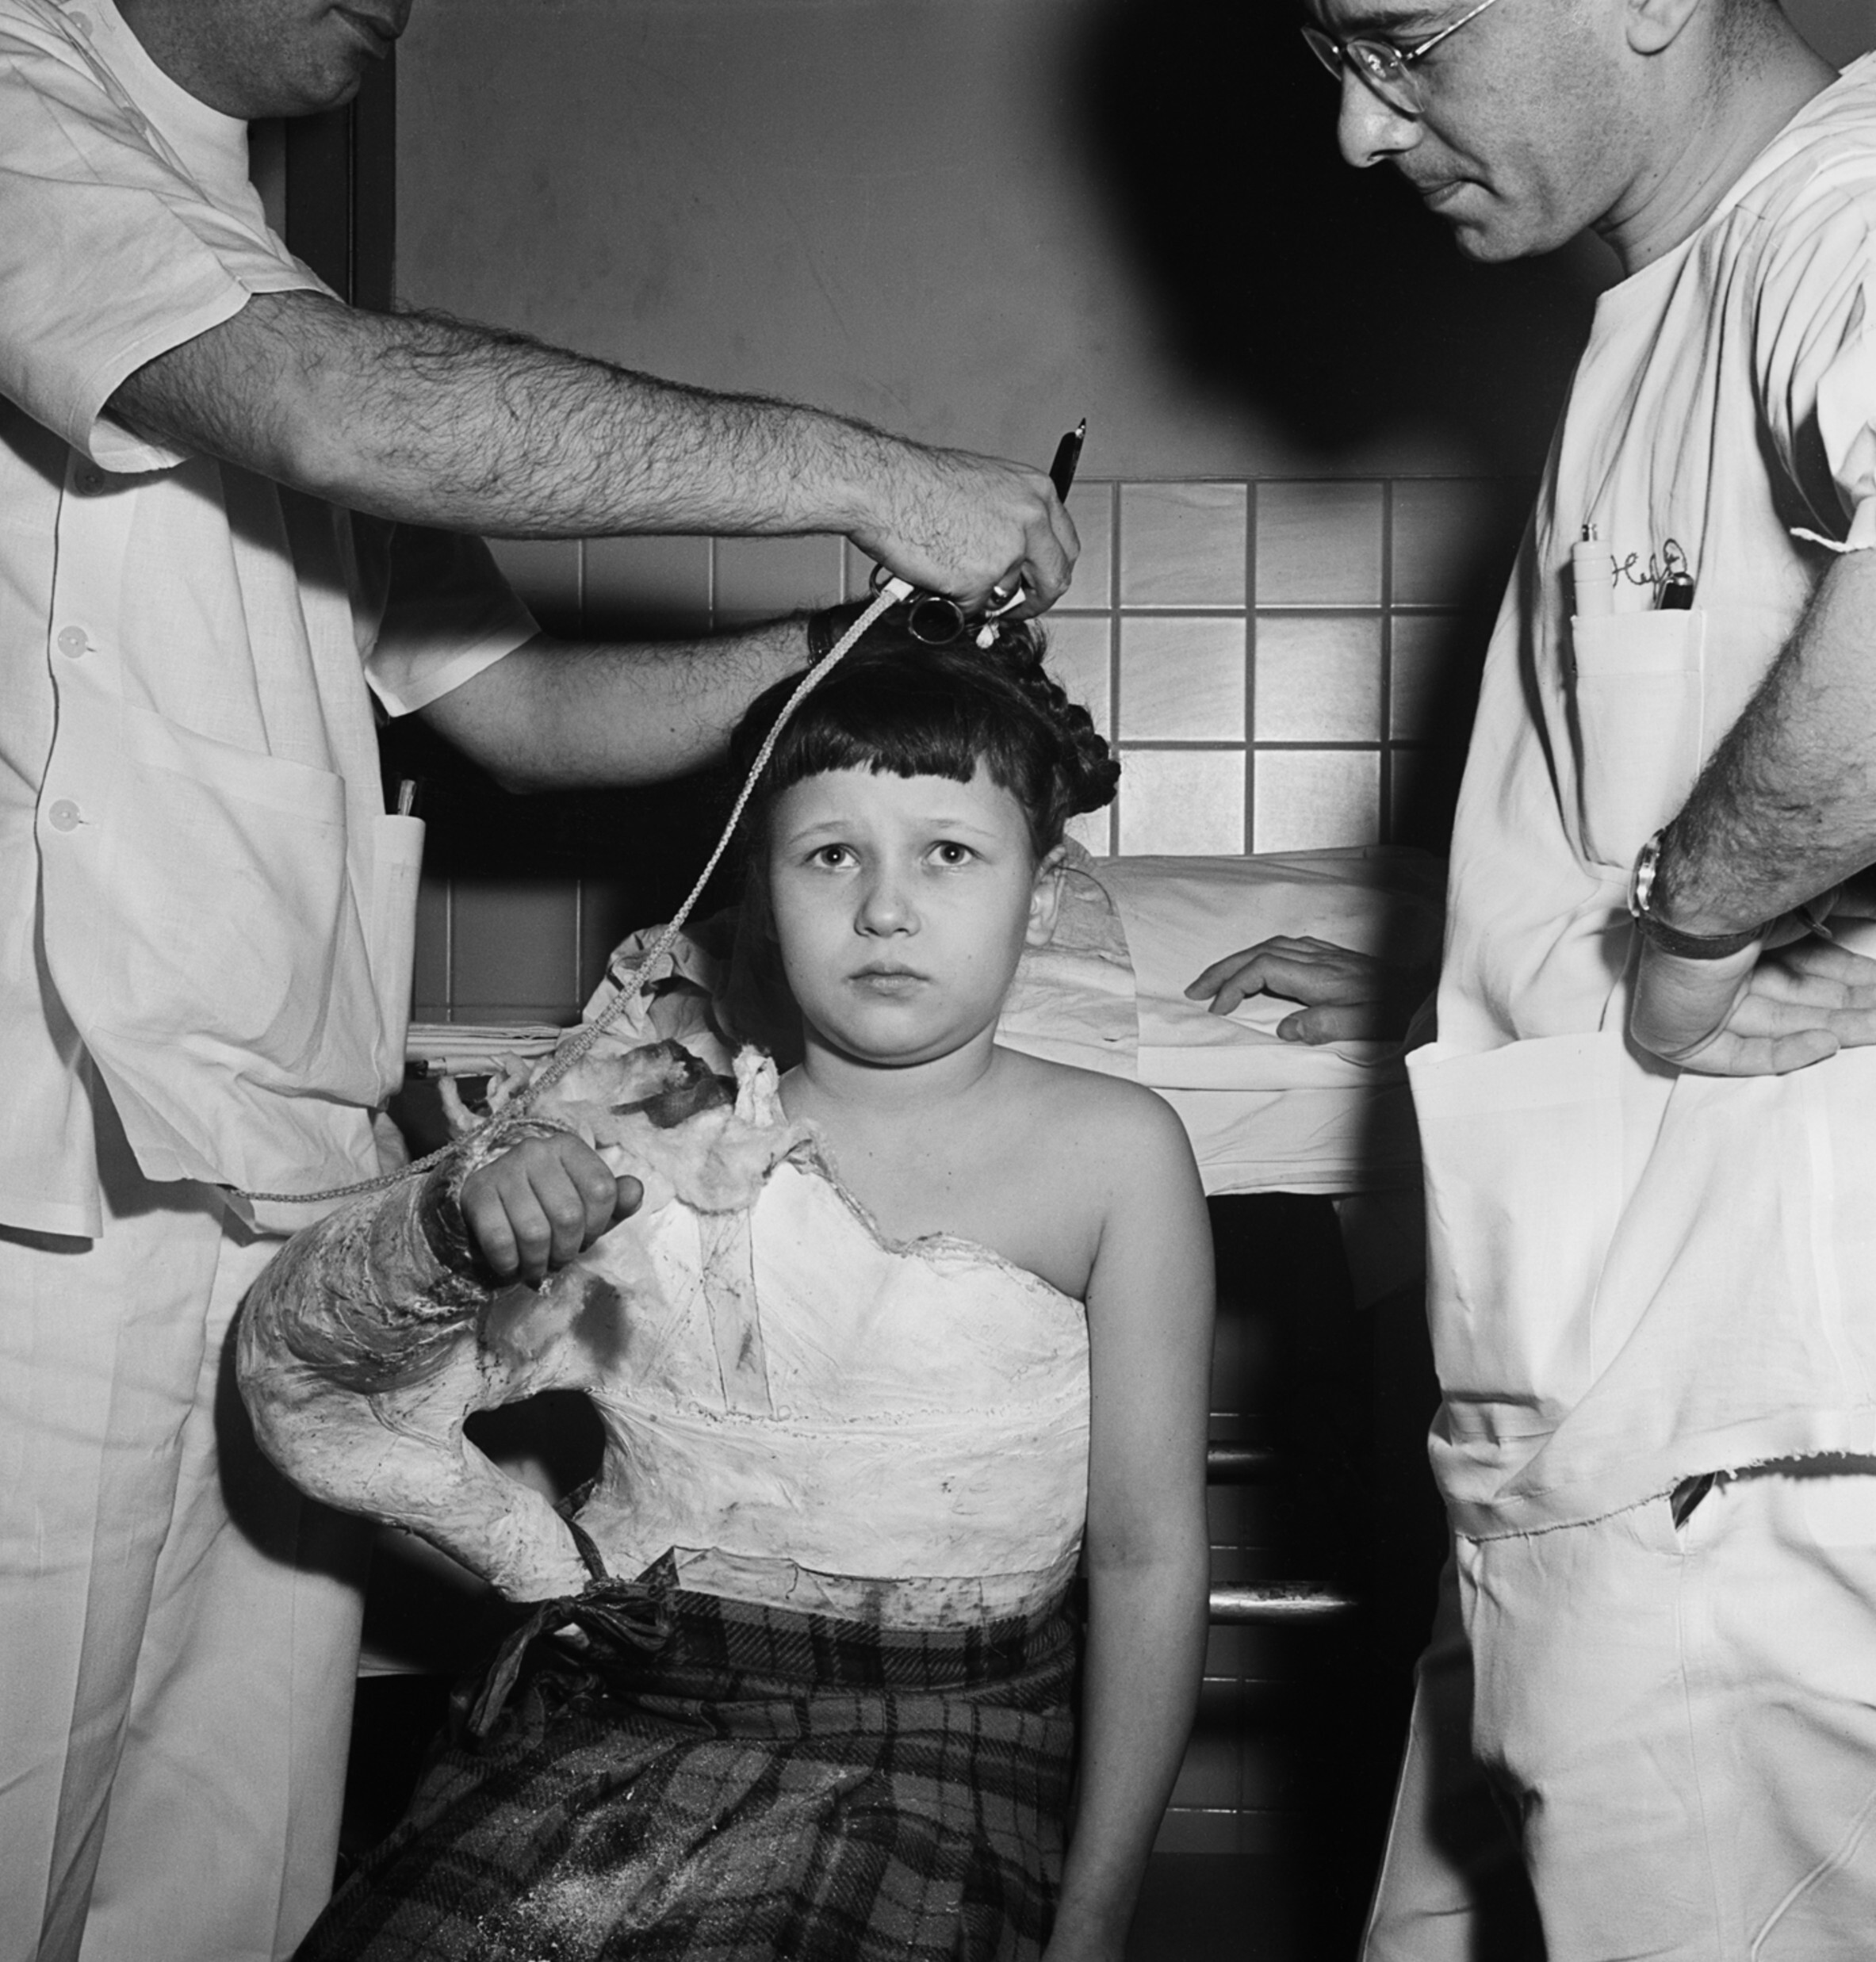 Врачи снимают гипс с тела молодого пациента, Еврейская больница суставных заболеваний, Восточный Гарлем, Нью-Йорк, конец 1940-х - начало 1950-х гг. Фотограф Роман Вишняк